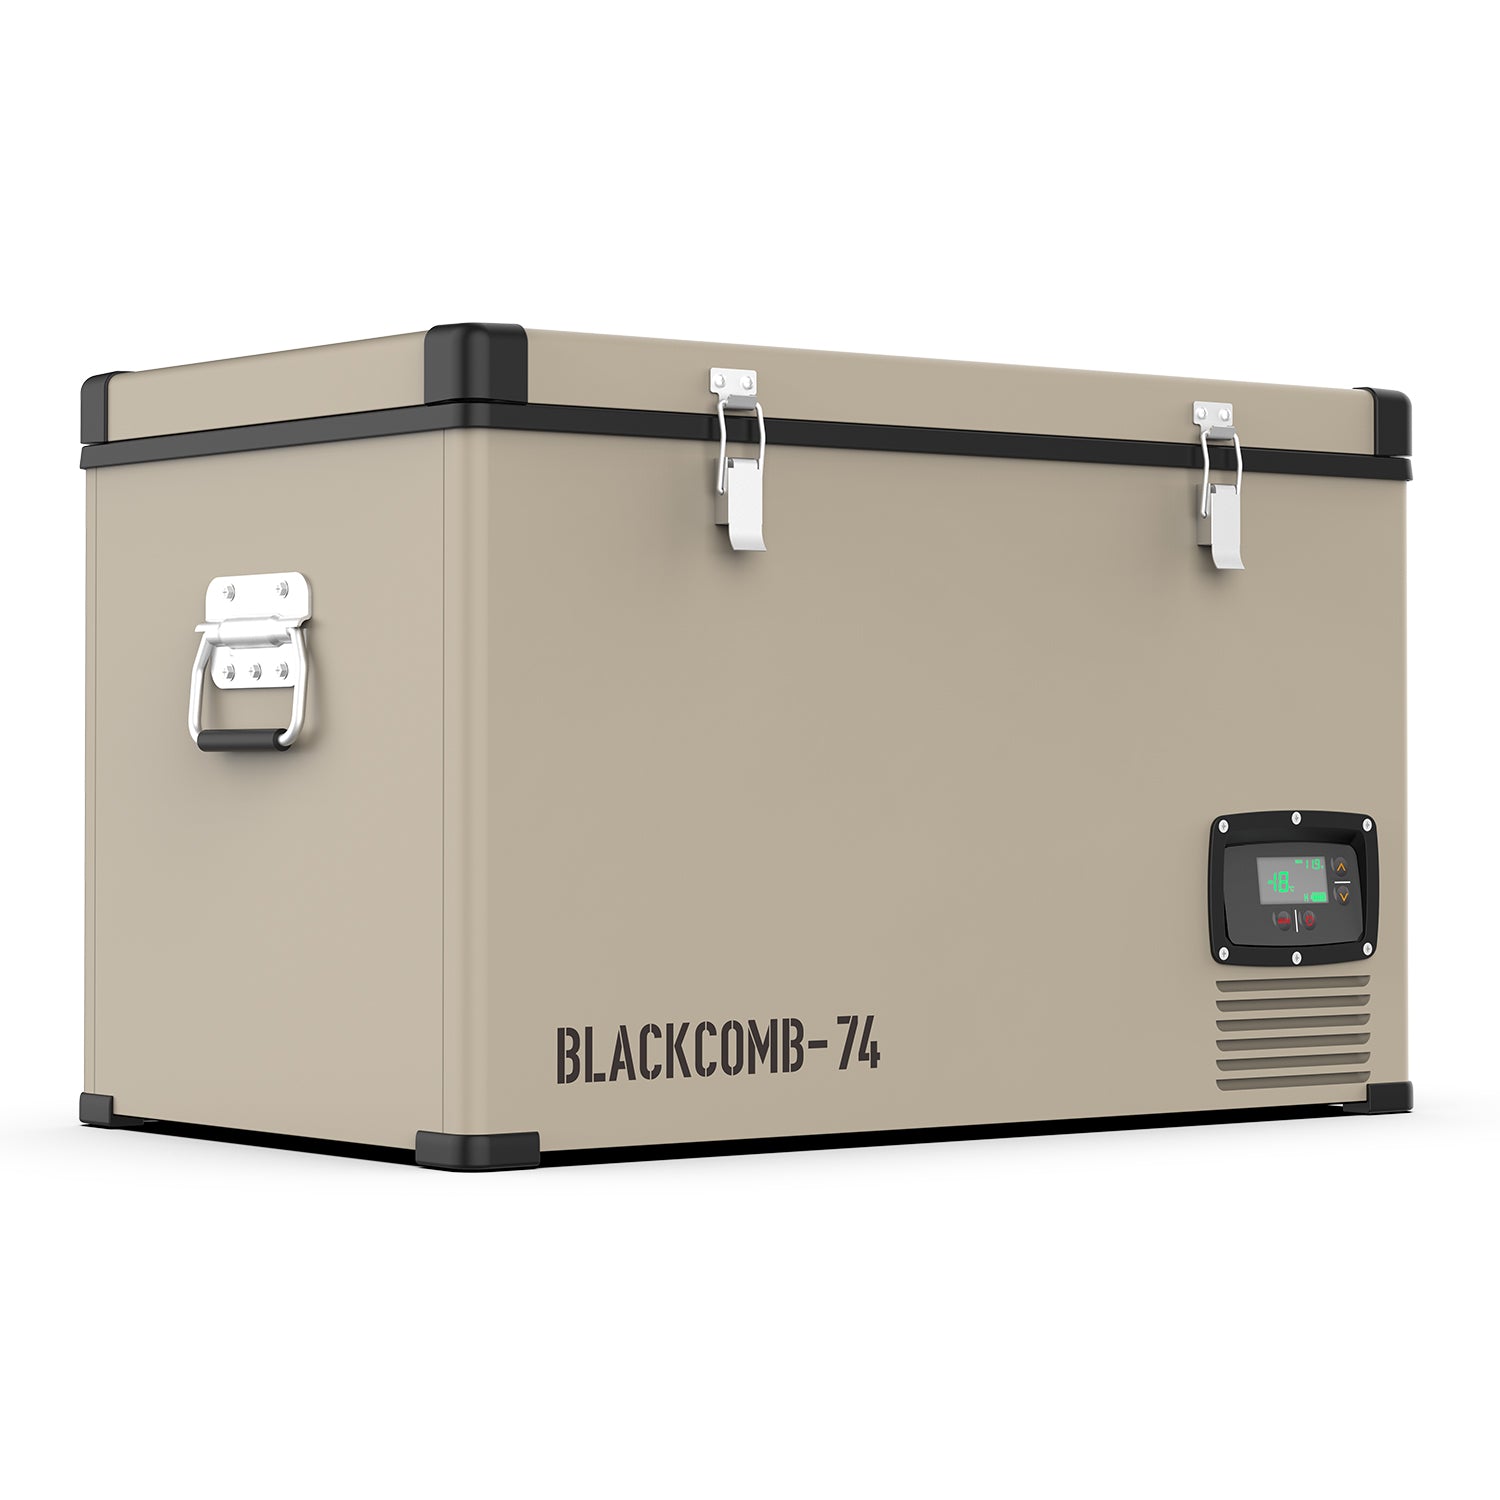 [BLACKCOMB-74] 74L Single Zone Portable Fridge Freezer